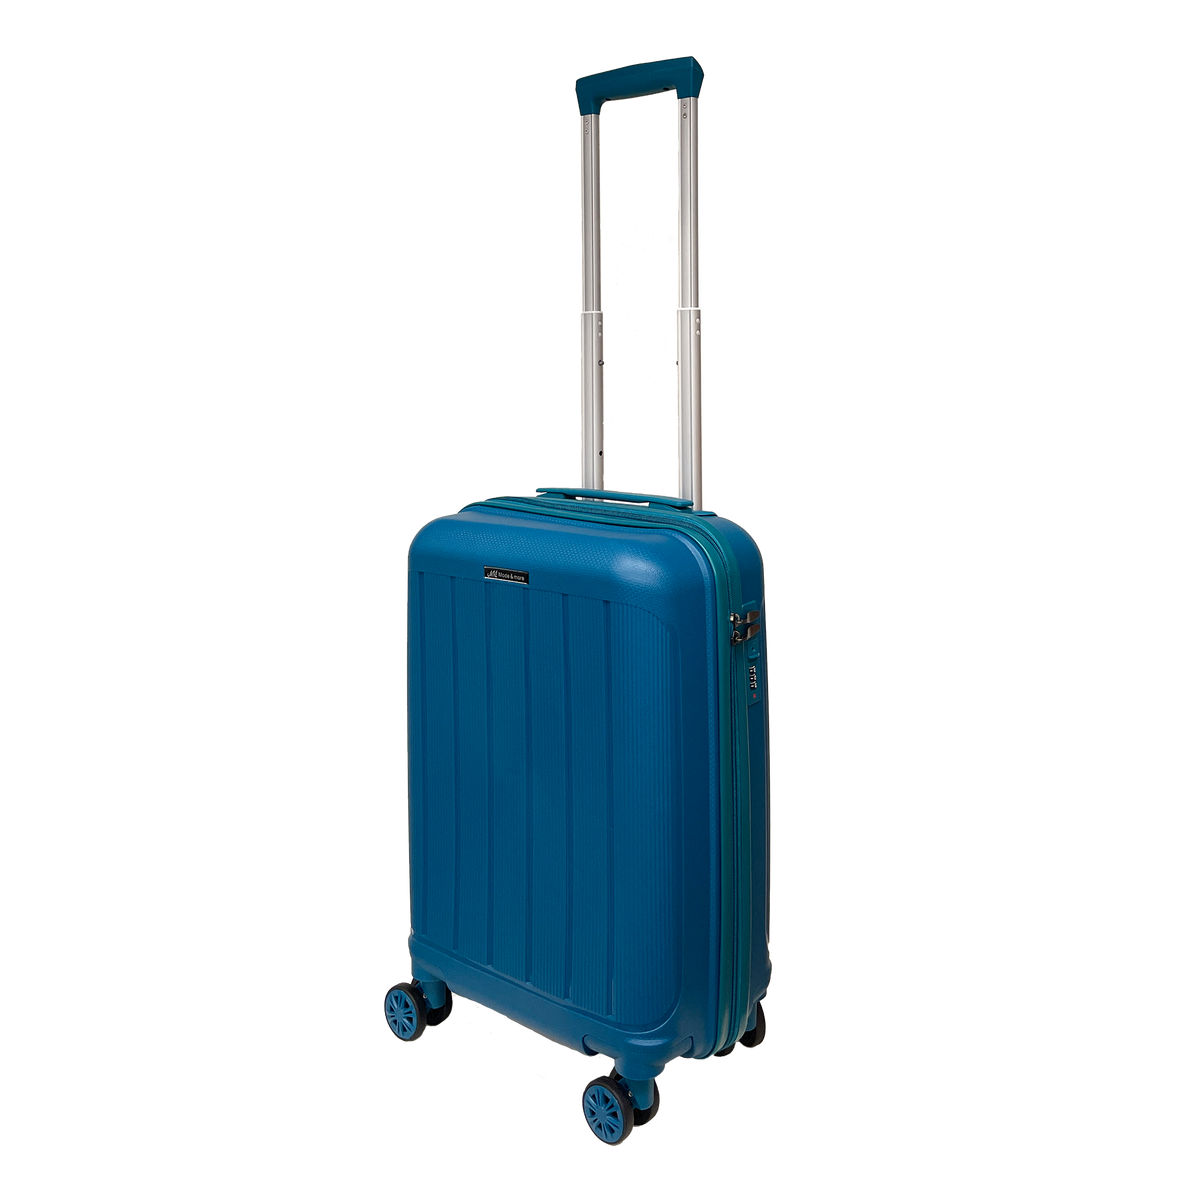 Bagaż podręczny z miękkiego polipropylenu, lekki, o wymiarach 55x36x25 cm, z zamkiem TSA, wysokiej jakości i bardzo lekki